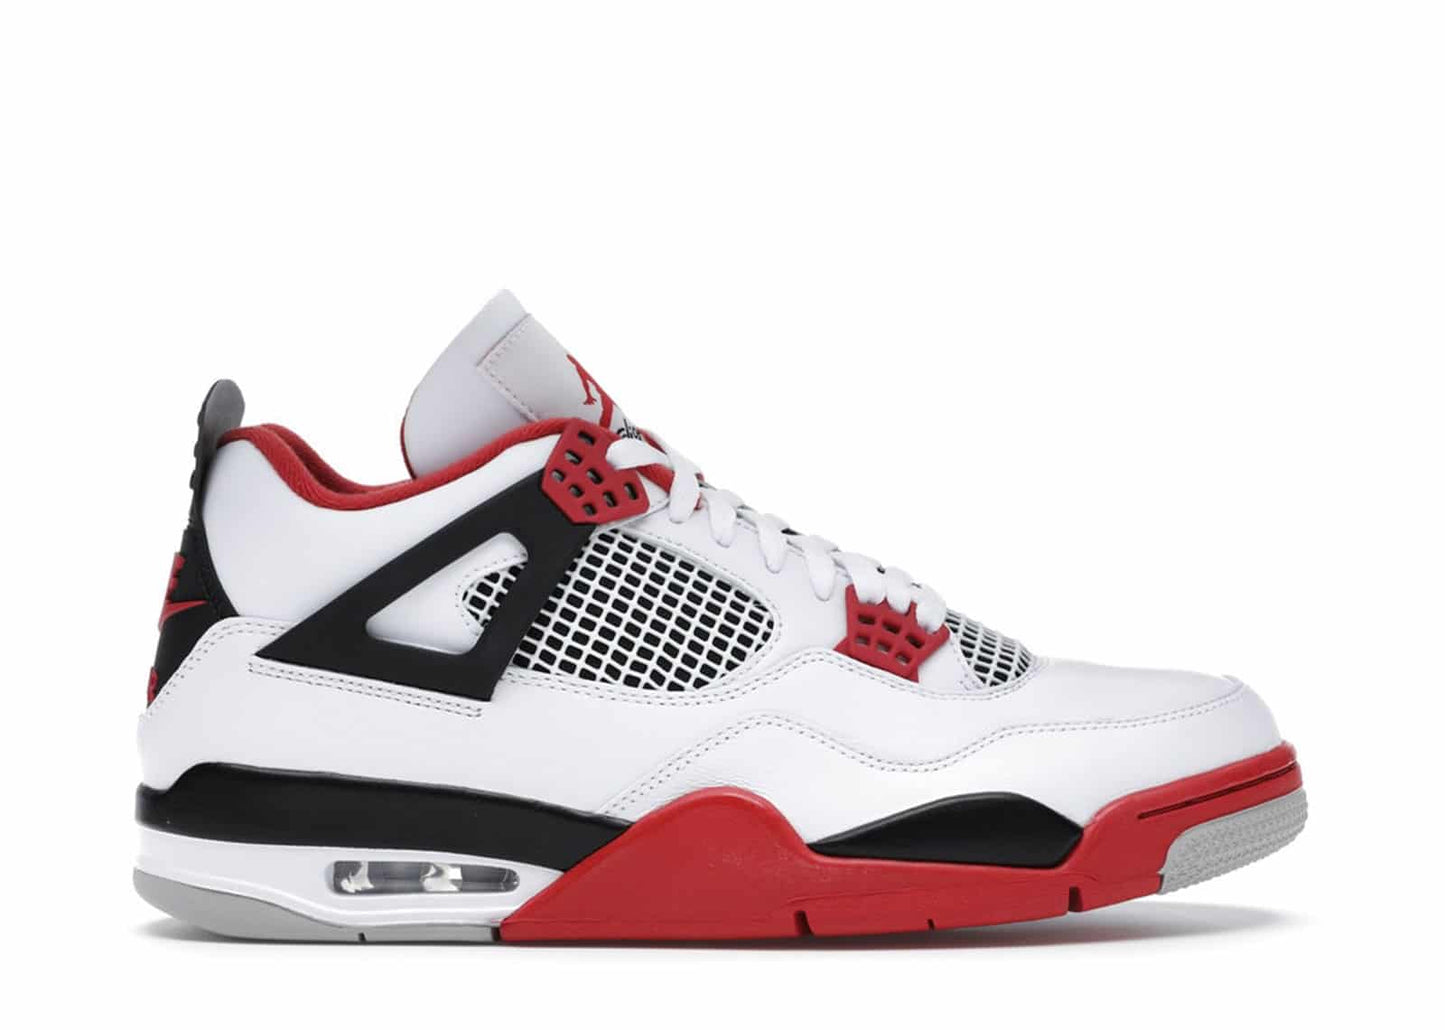 Air Jordan 4 Retro "Fire Red" (2020) sneakers (Women's)